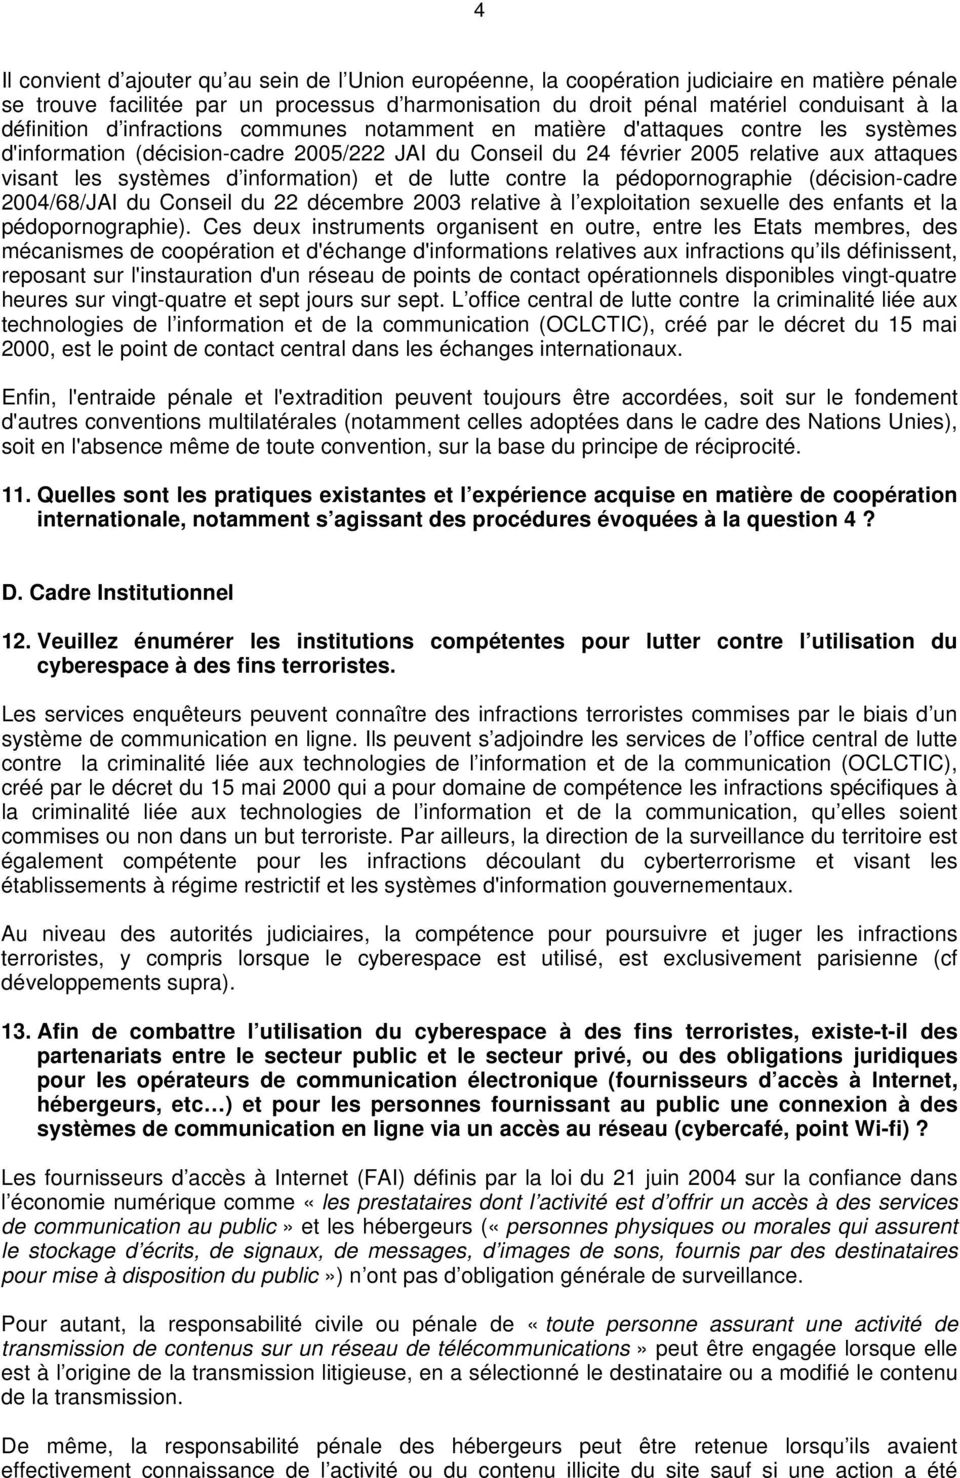 systèmes d information) et de lutte contre la pédopornographie (décision-cadre 2004/68/JAI du Conseil du 22 décembre 2003 relative à l exploitation sexuelle des enfants et la pédopornographie).